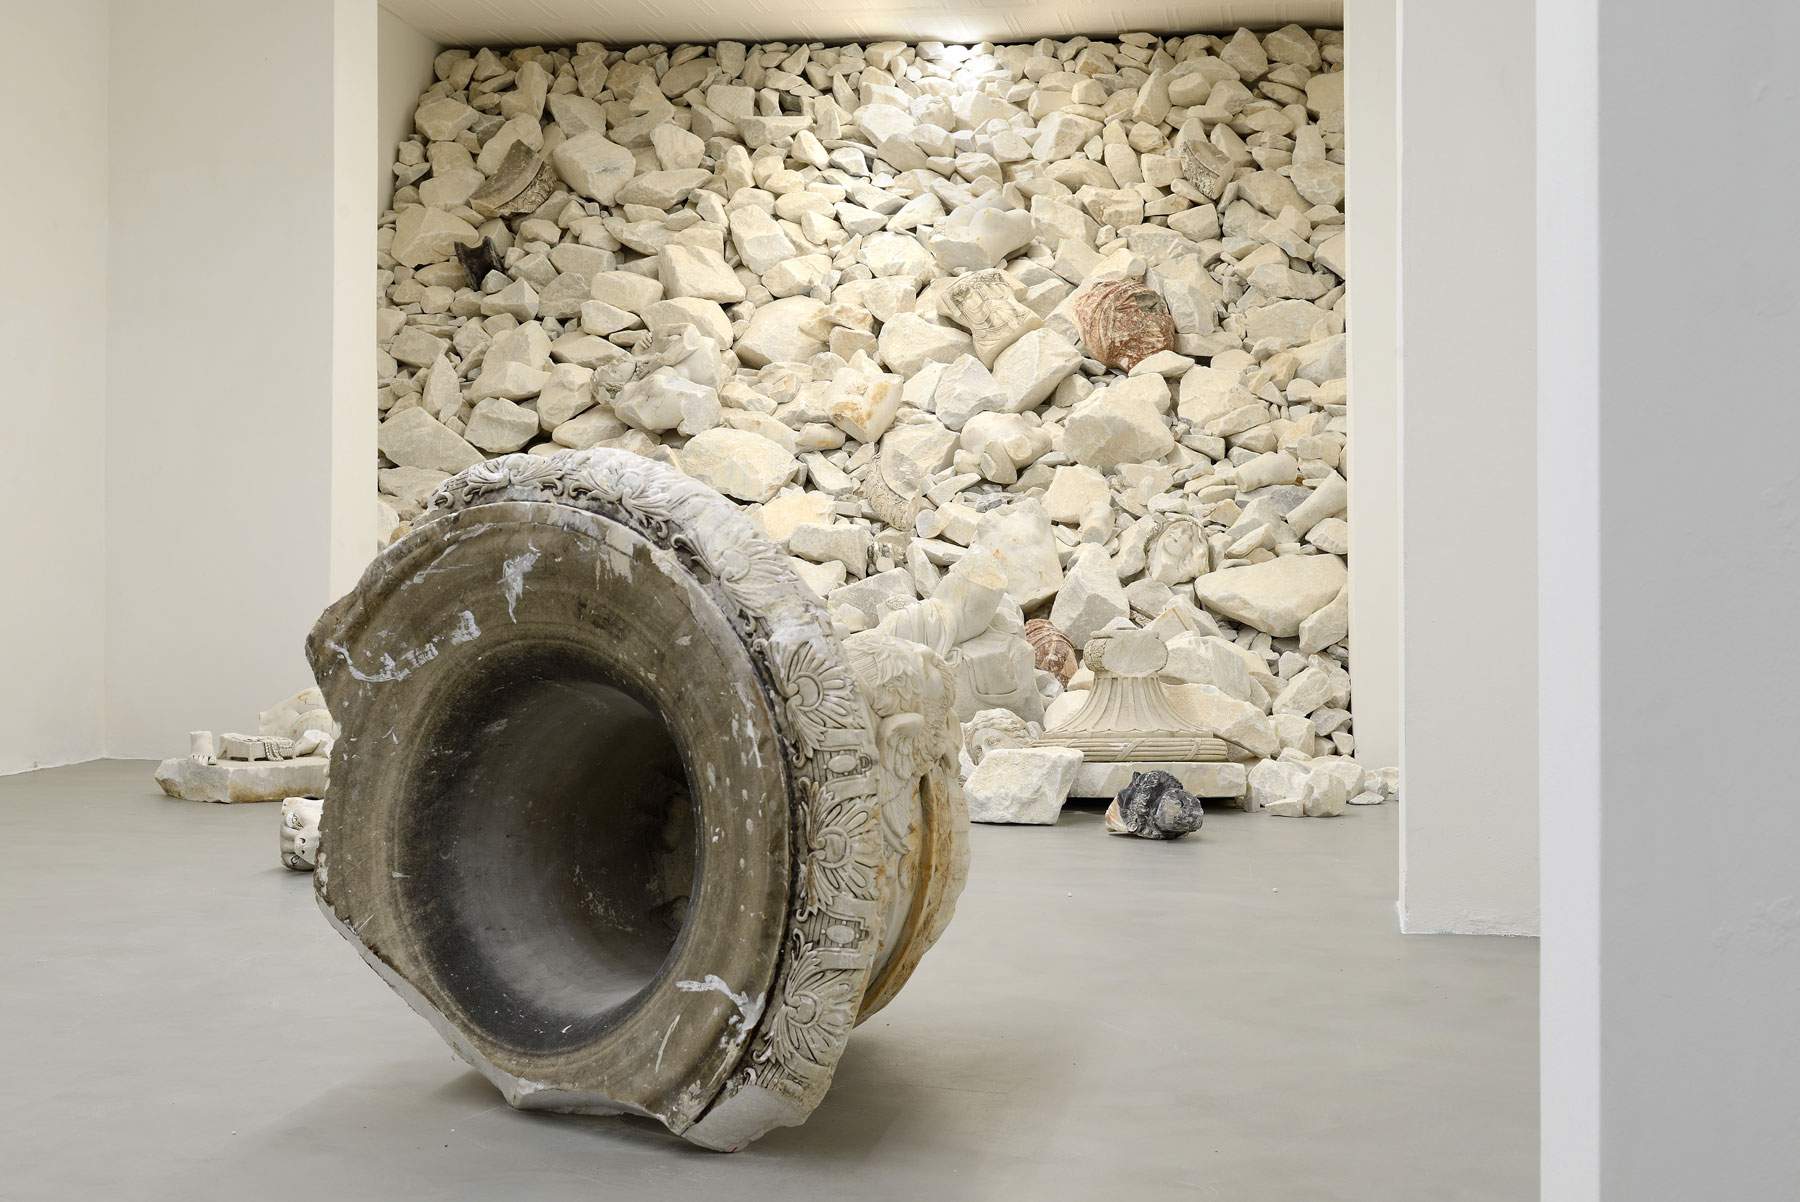 Acqua alta : Fabio Viale évoque le drame de Venise et le passage du temps avec ses œuvres en marbre